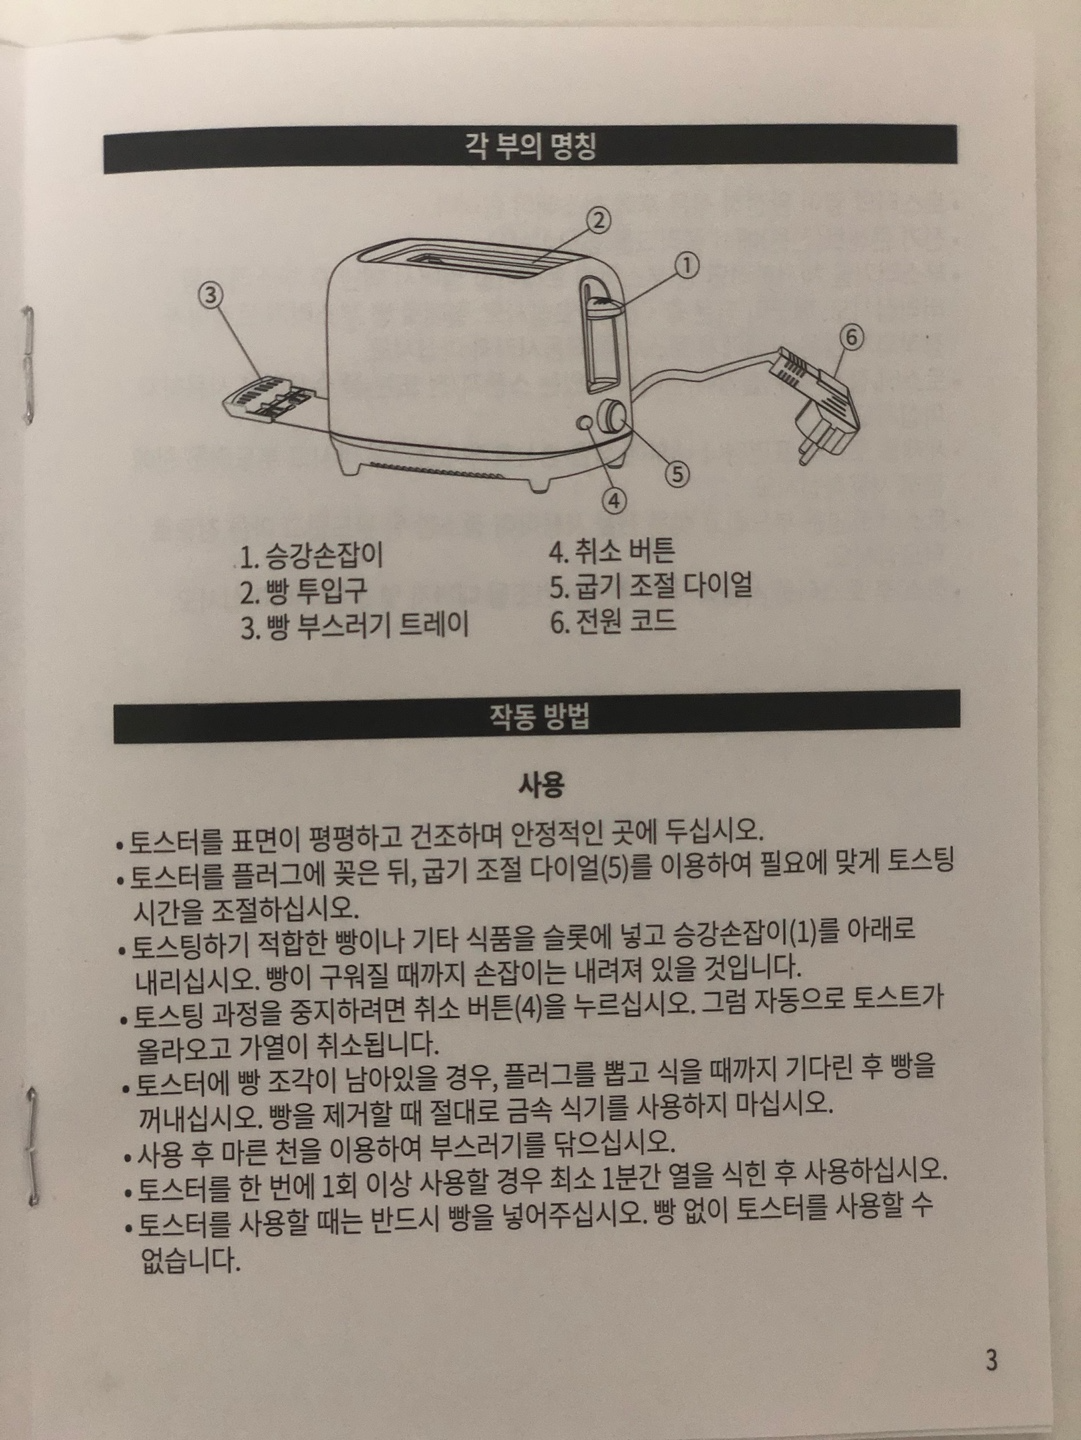 토스트기 사용방법